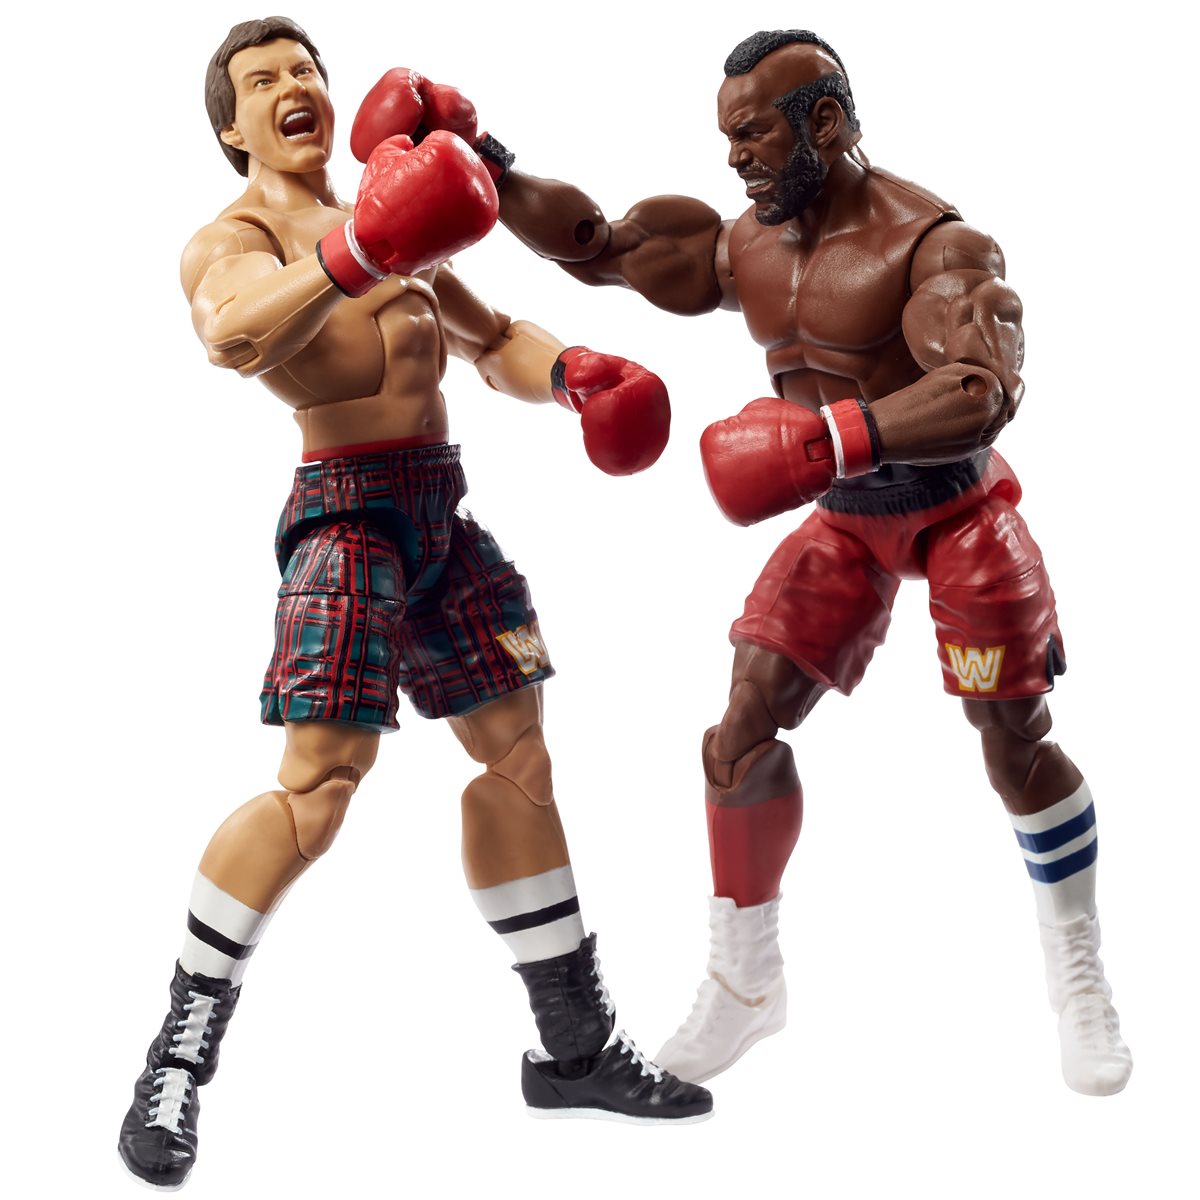 WWE Mattel 2-Packs Mr. T & "Rowdy" Roddy Piper